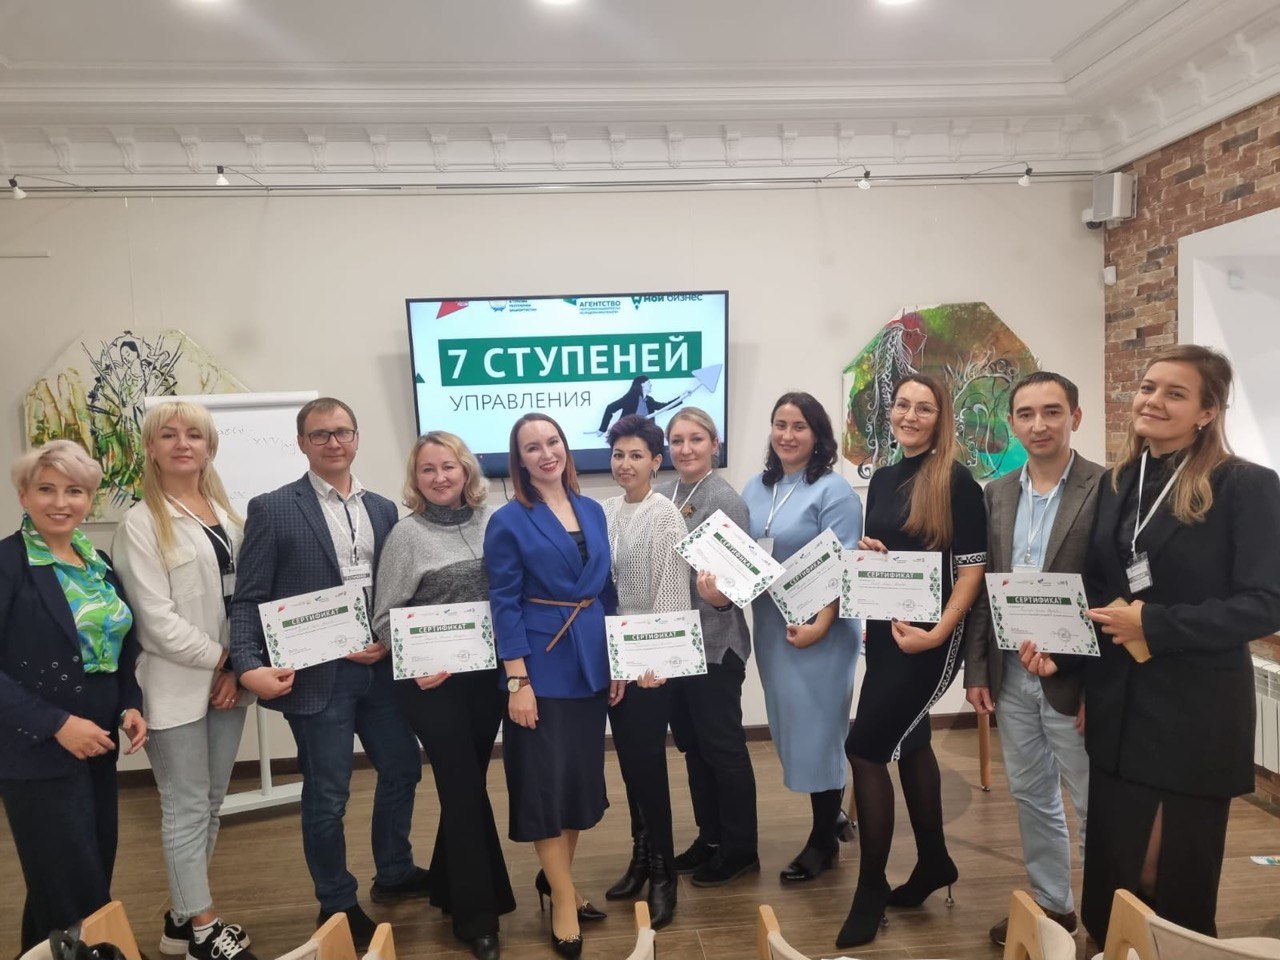 В Уфе с 14 августа по 4 октября прошла обучающая программа «7 ступеней управления», в которой приняли участие 70 предпринимателей Башкортостана